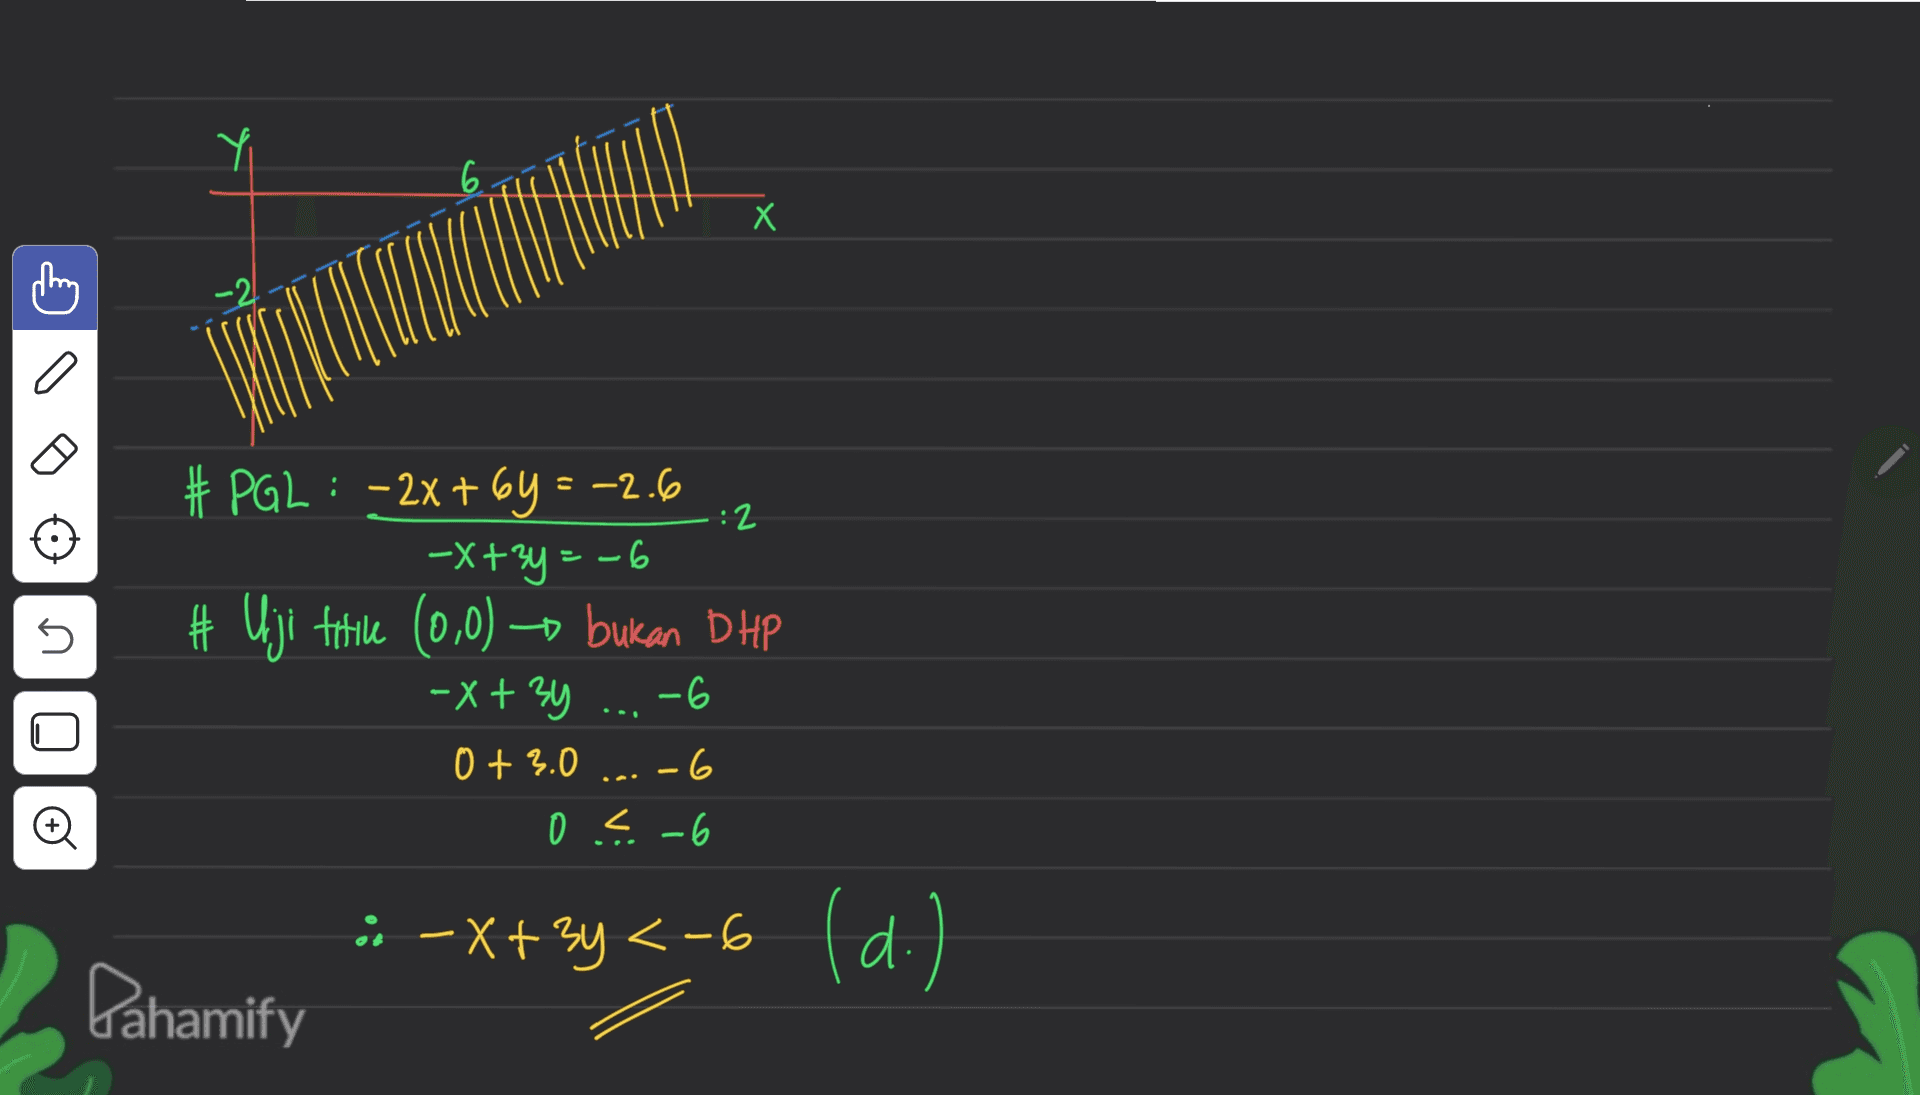 х s 2 # PGL: -2x + 6y = -2.6 -X+²y = -6 Uji titile (0,0) + bukan DHP -X+34 -6 U U 0 + 3.0 -6 9 0 = -6 ---x+2y <-6 (d.) ; -X+ < ( Pahamify 